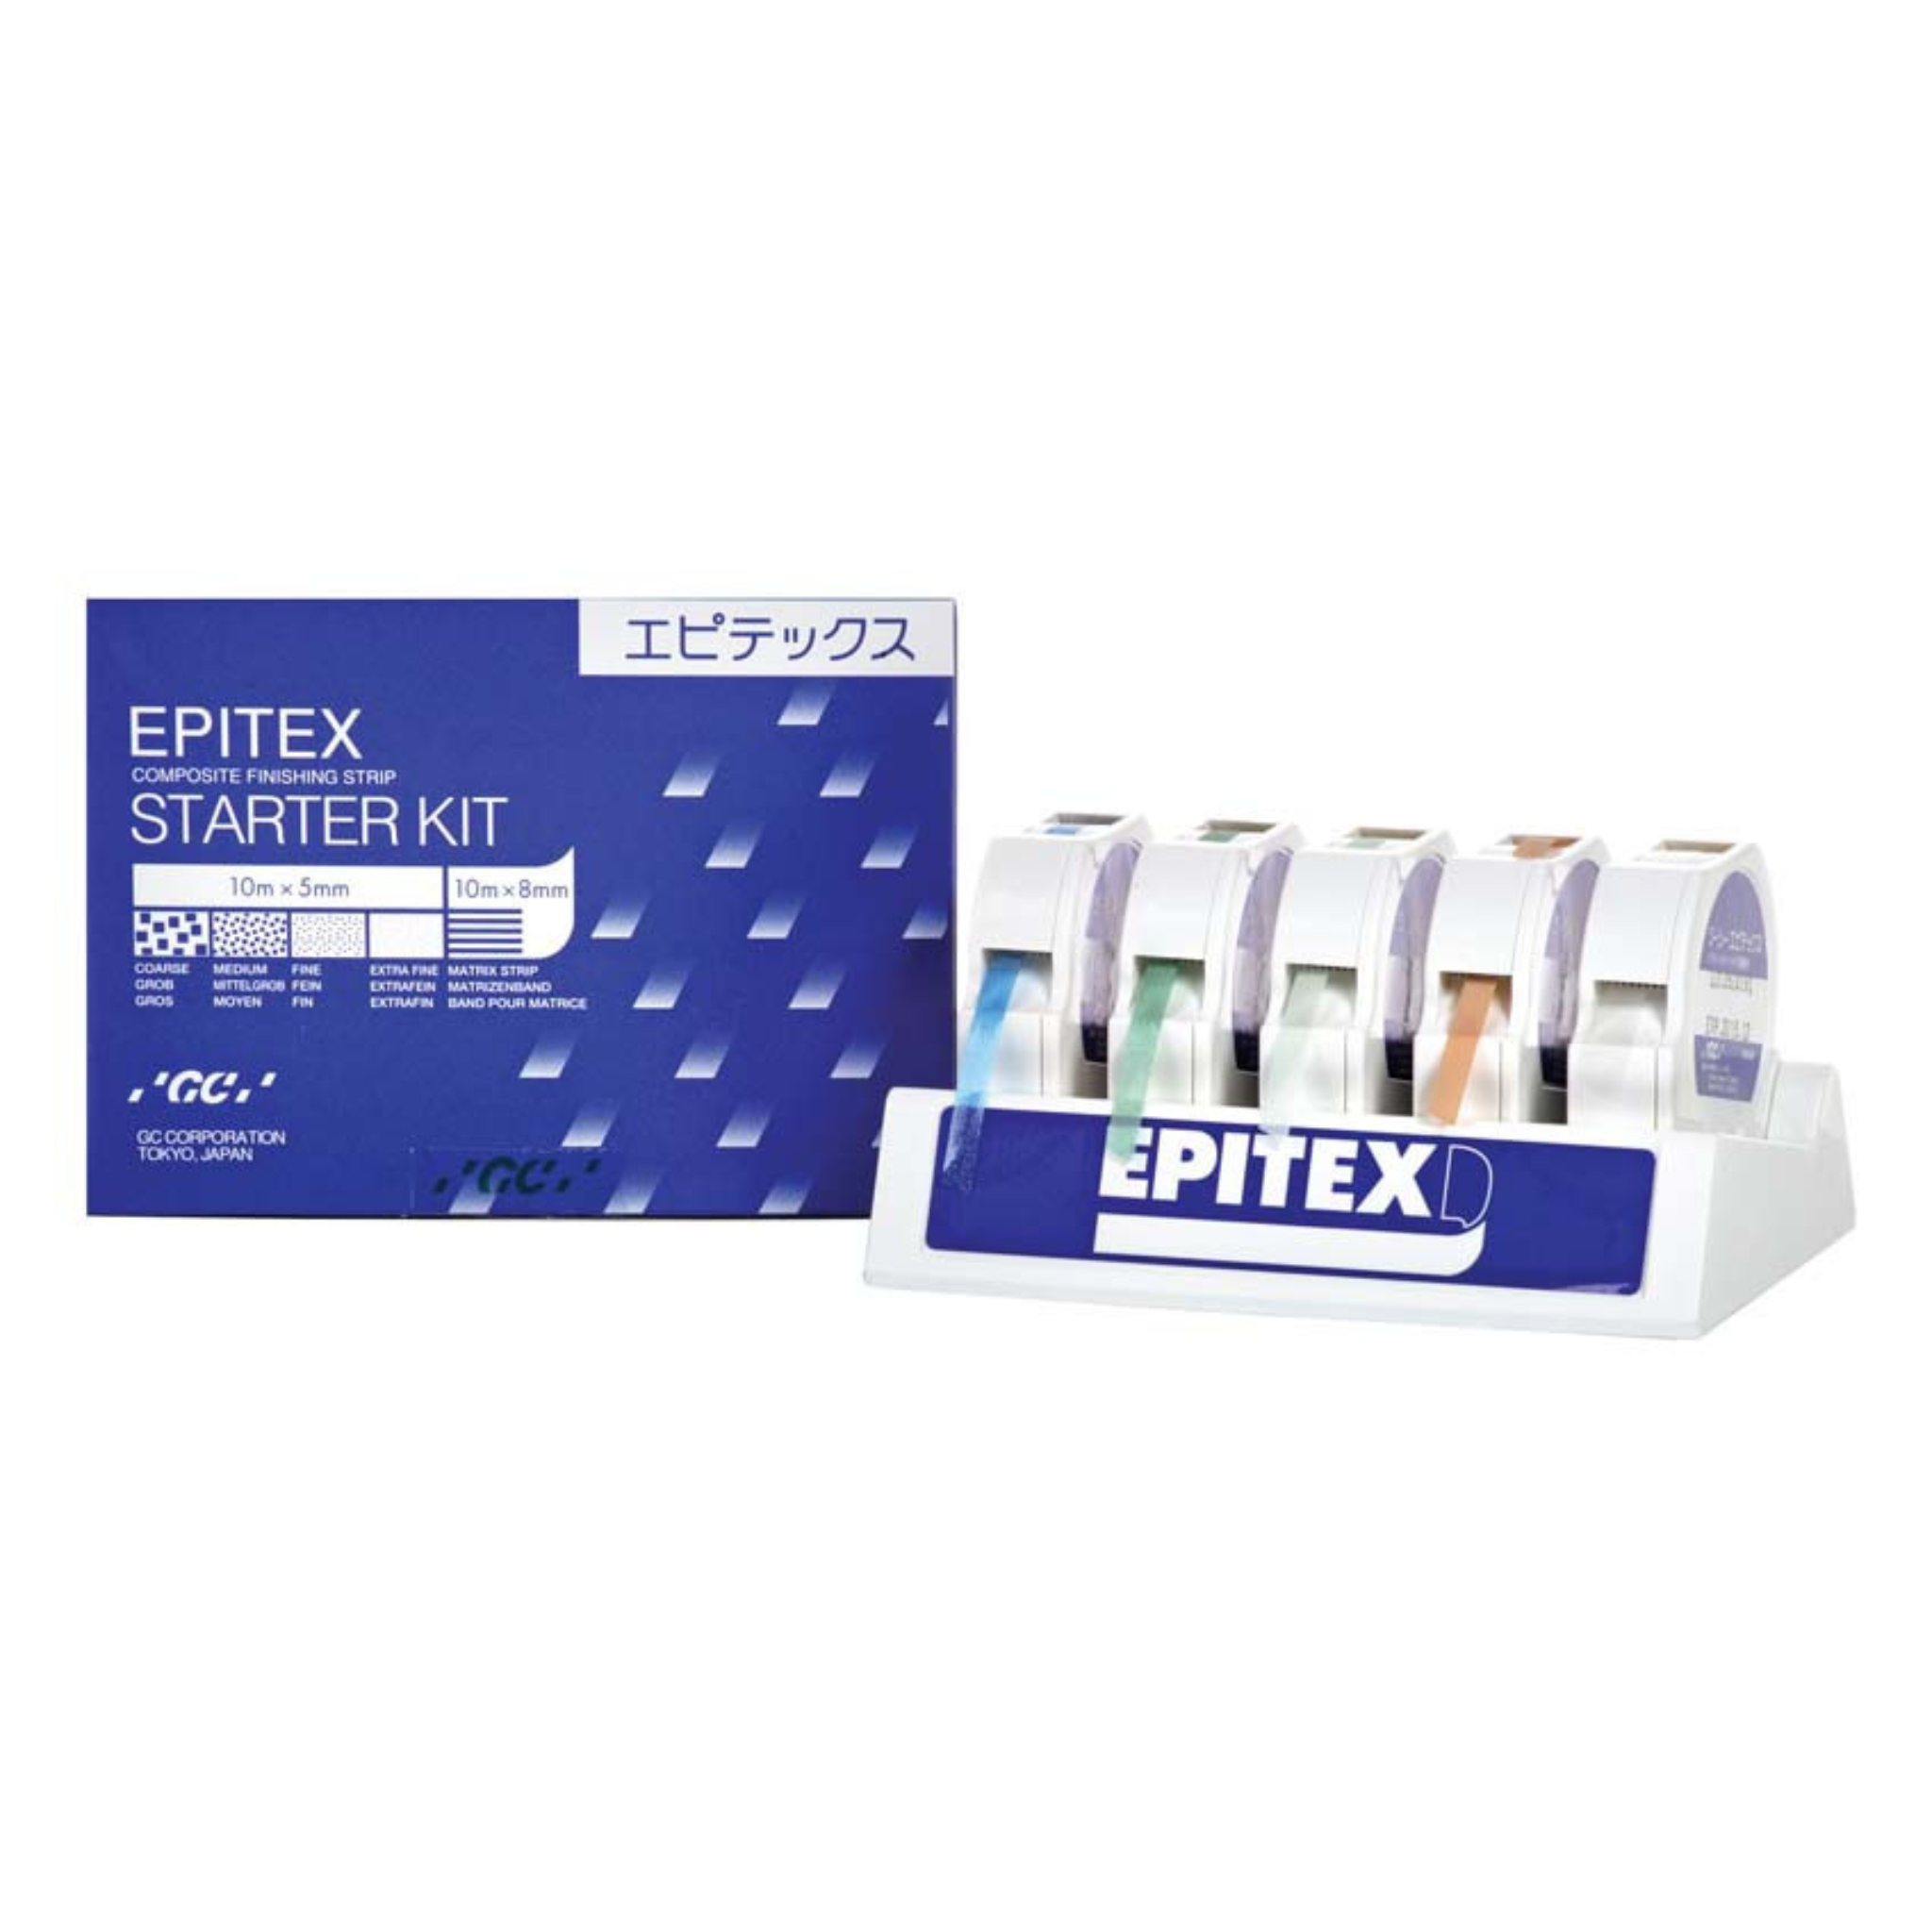 Polishing strips<br> Epitex